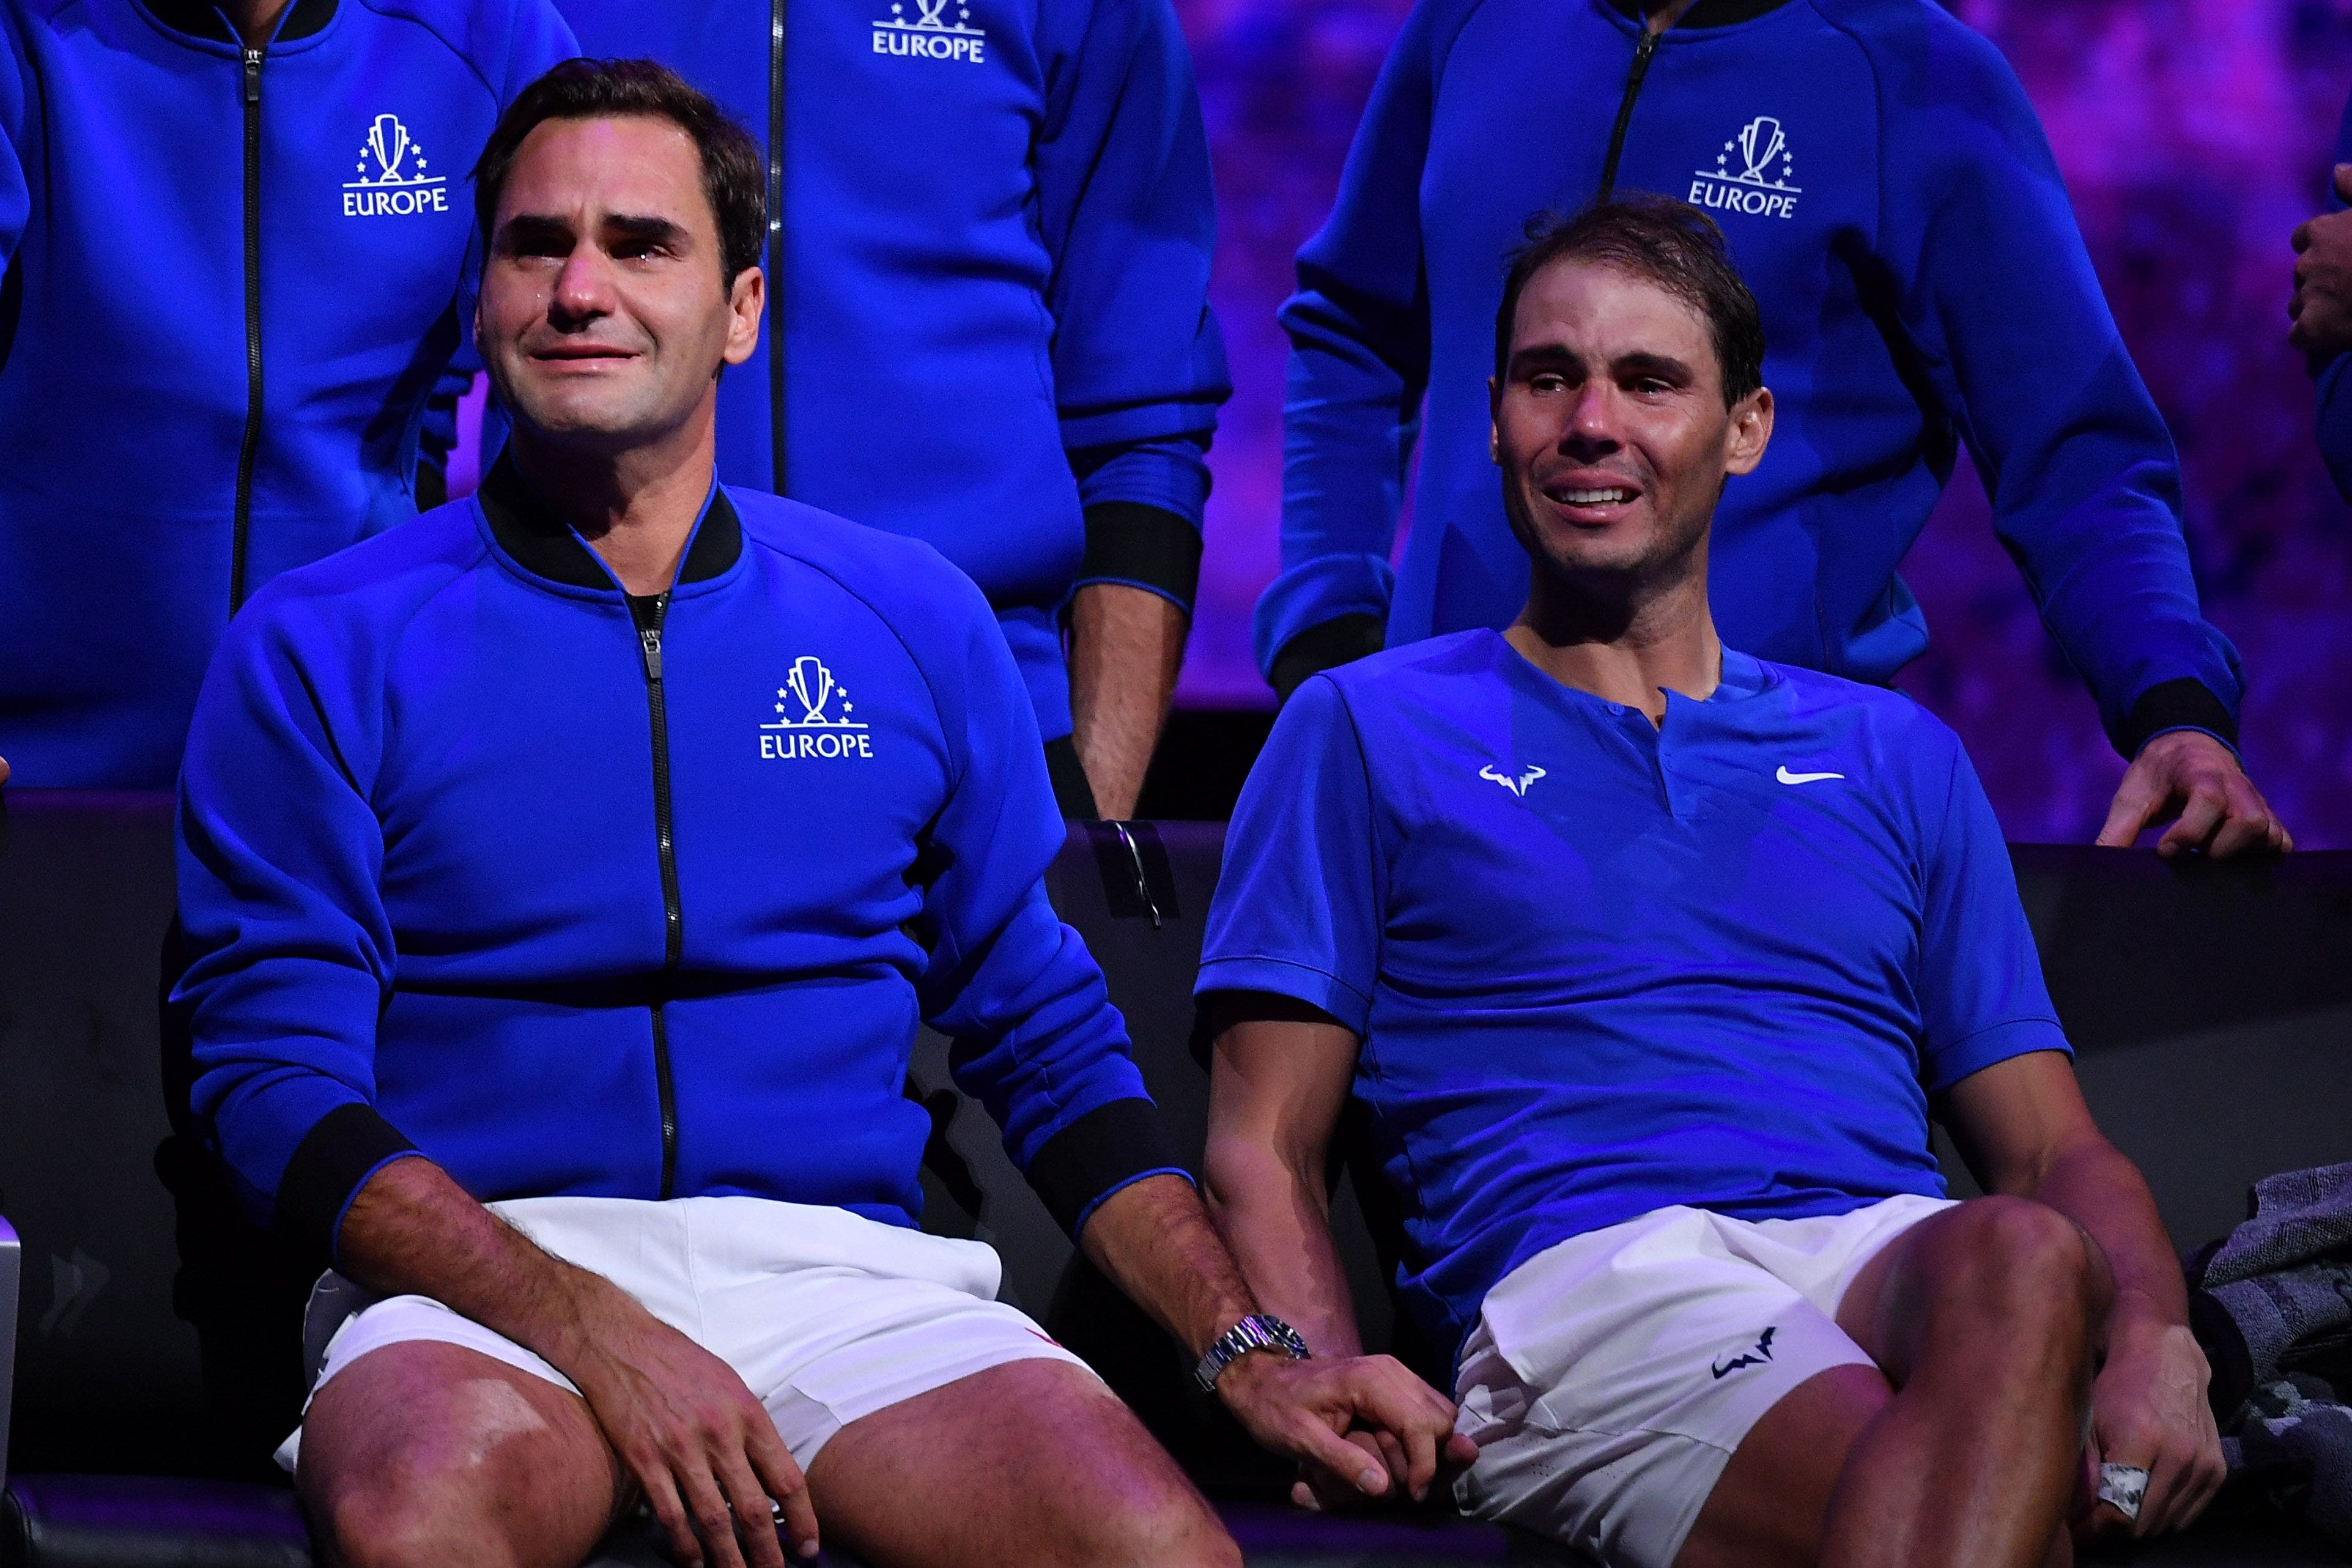 Ein Bild für die Ewigkeit: Roger Federer und Rafael Nadal händehaltend mit Tränen in den Augen .